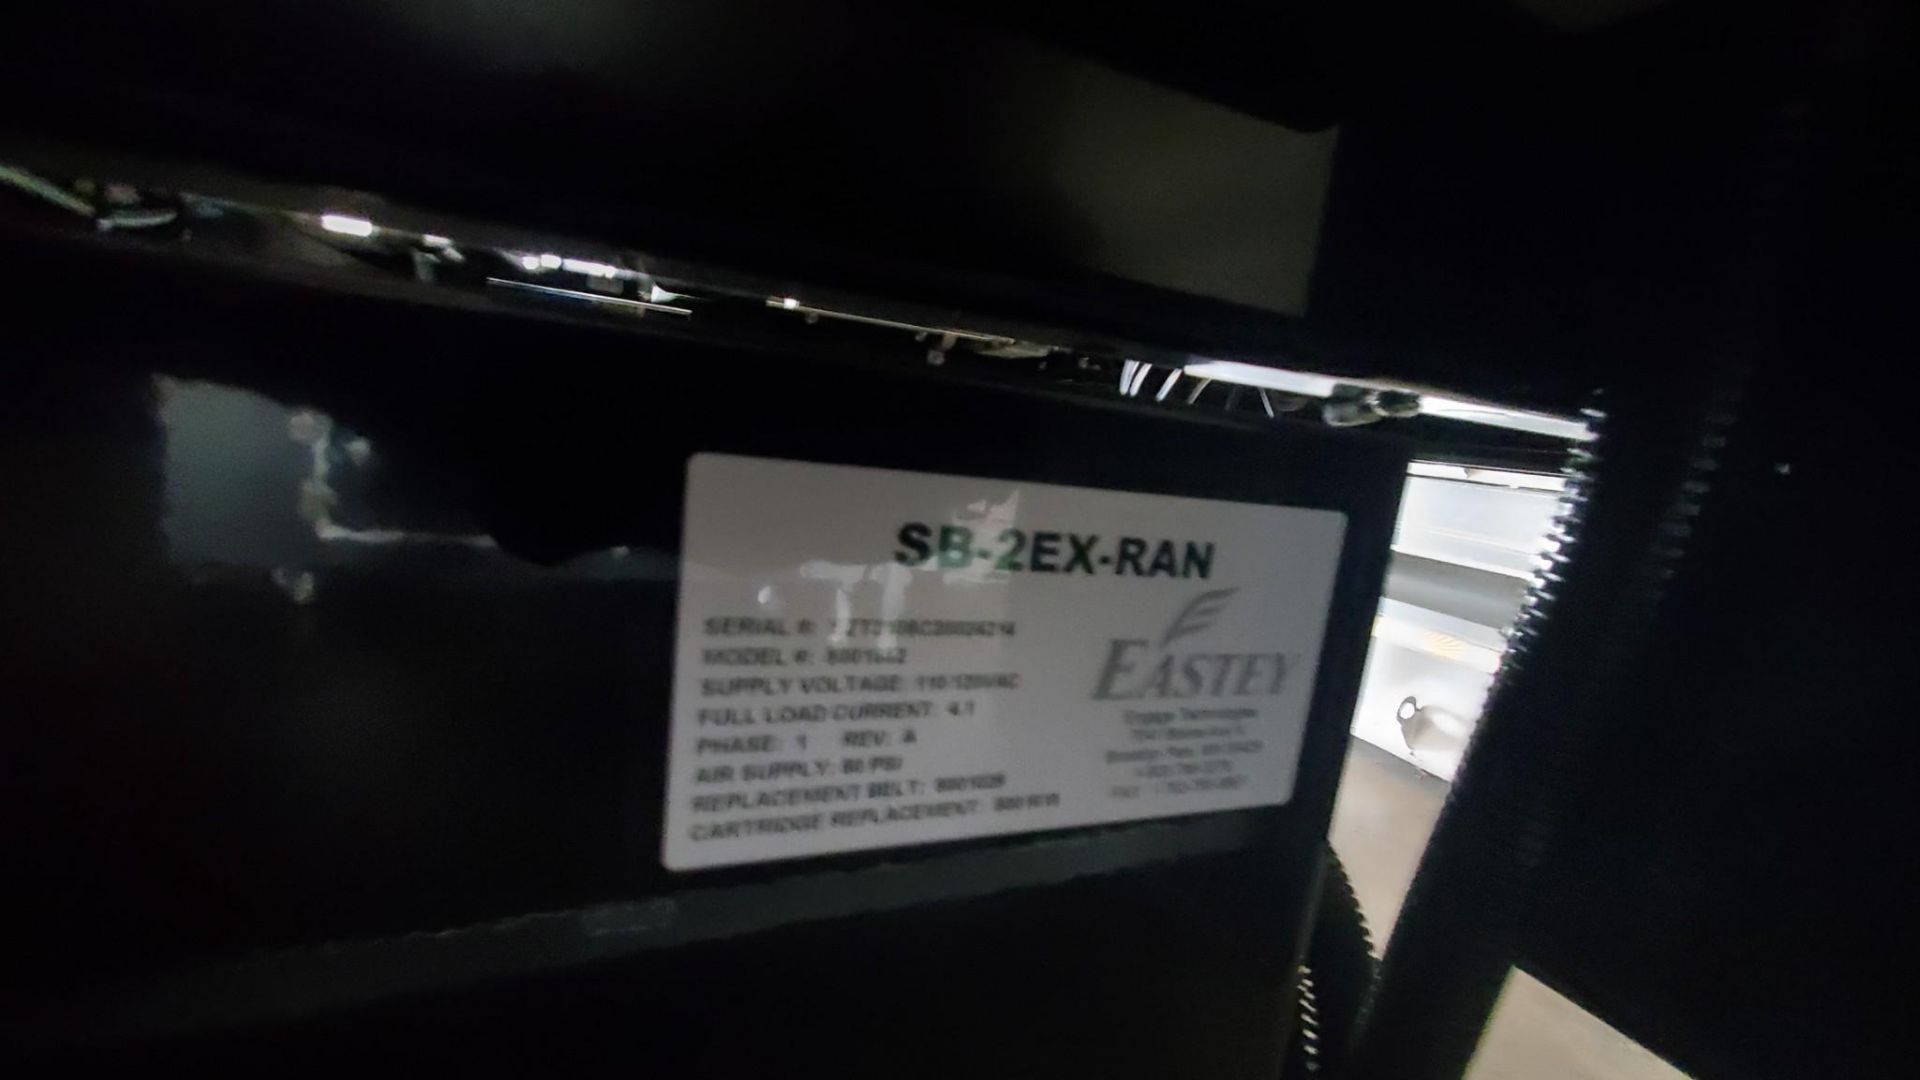 EASTEY SB-2EX-RANDOM SIDE BELT CASE TAPER, 2021 - Image 4 of 7